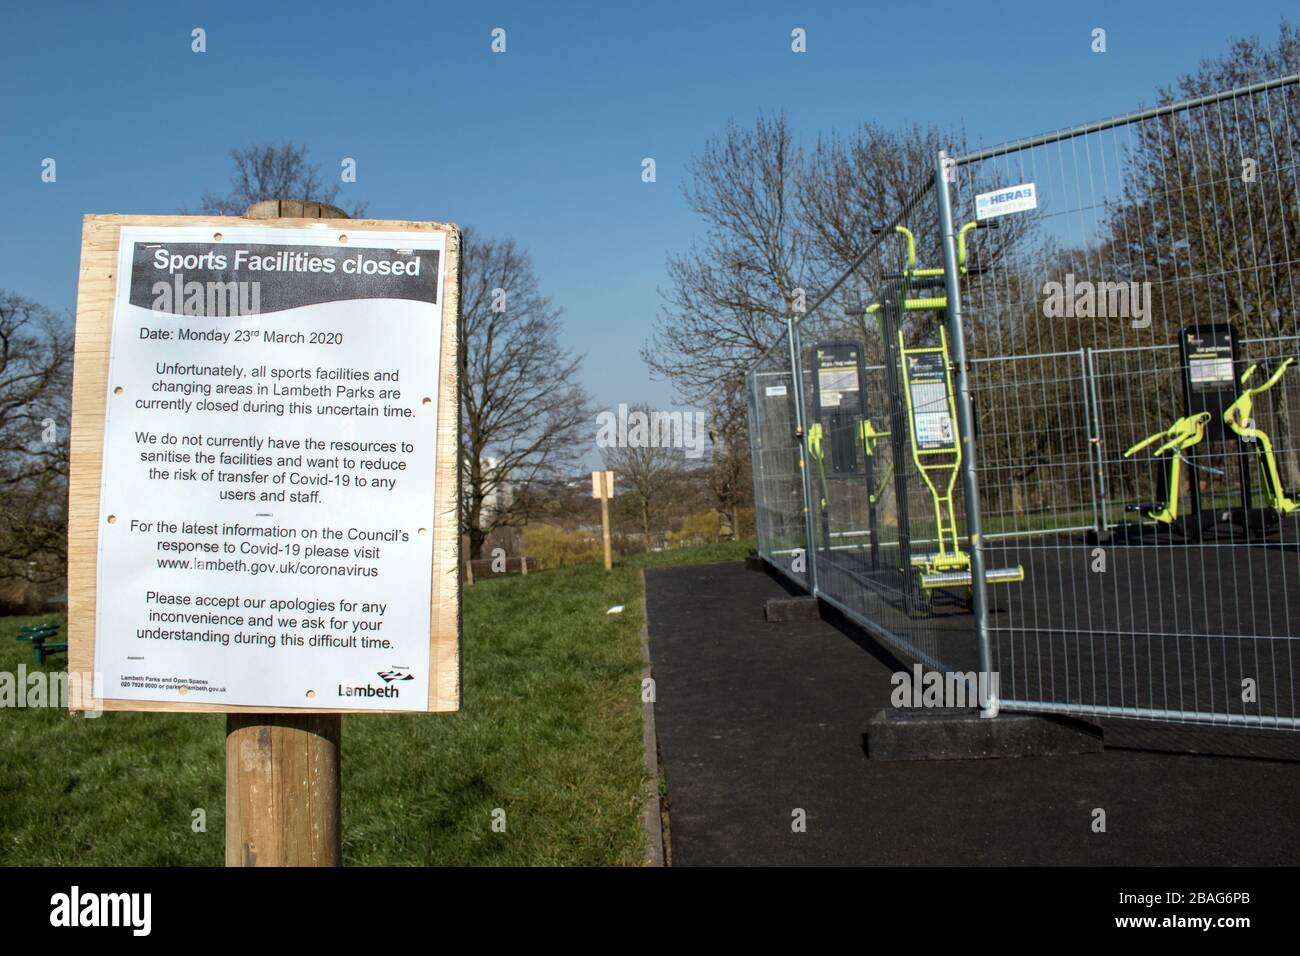 Londres, Reino Unido: 17 de marzo de 2020: Instalaciones deportivas cerrado signo en Lambeth debido a Covid-19 coronavirus Foto de stock